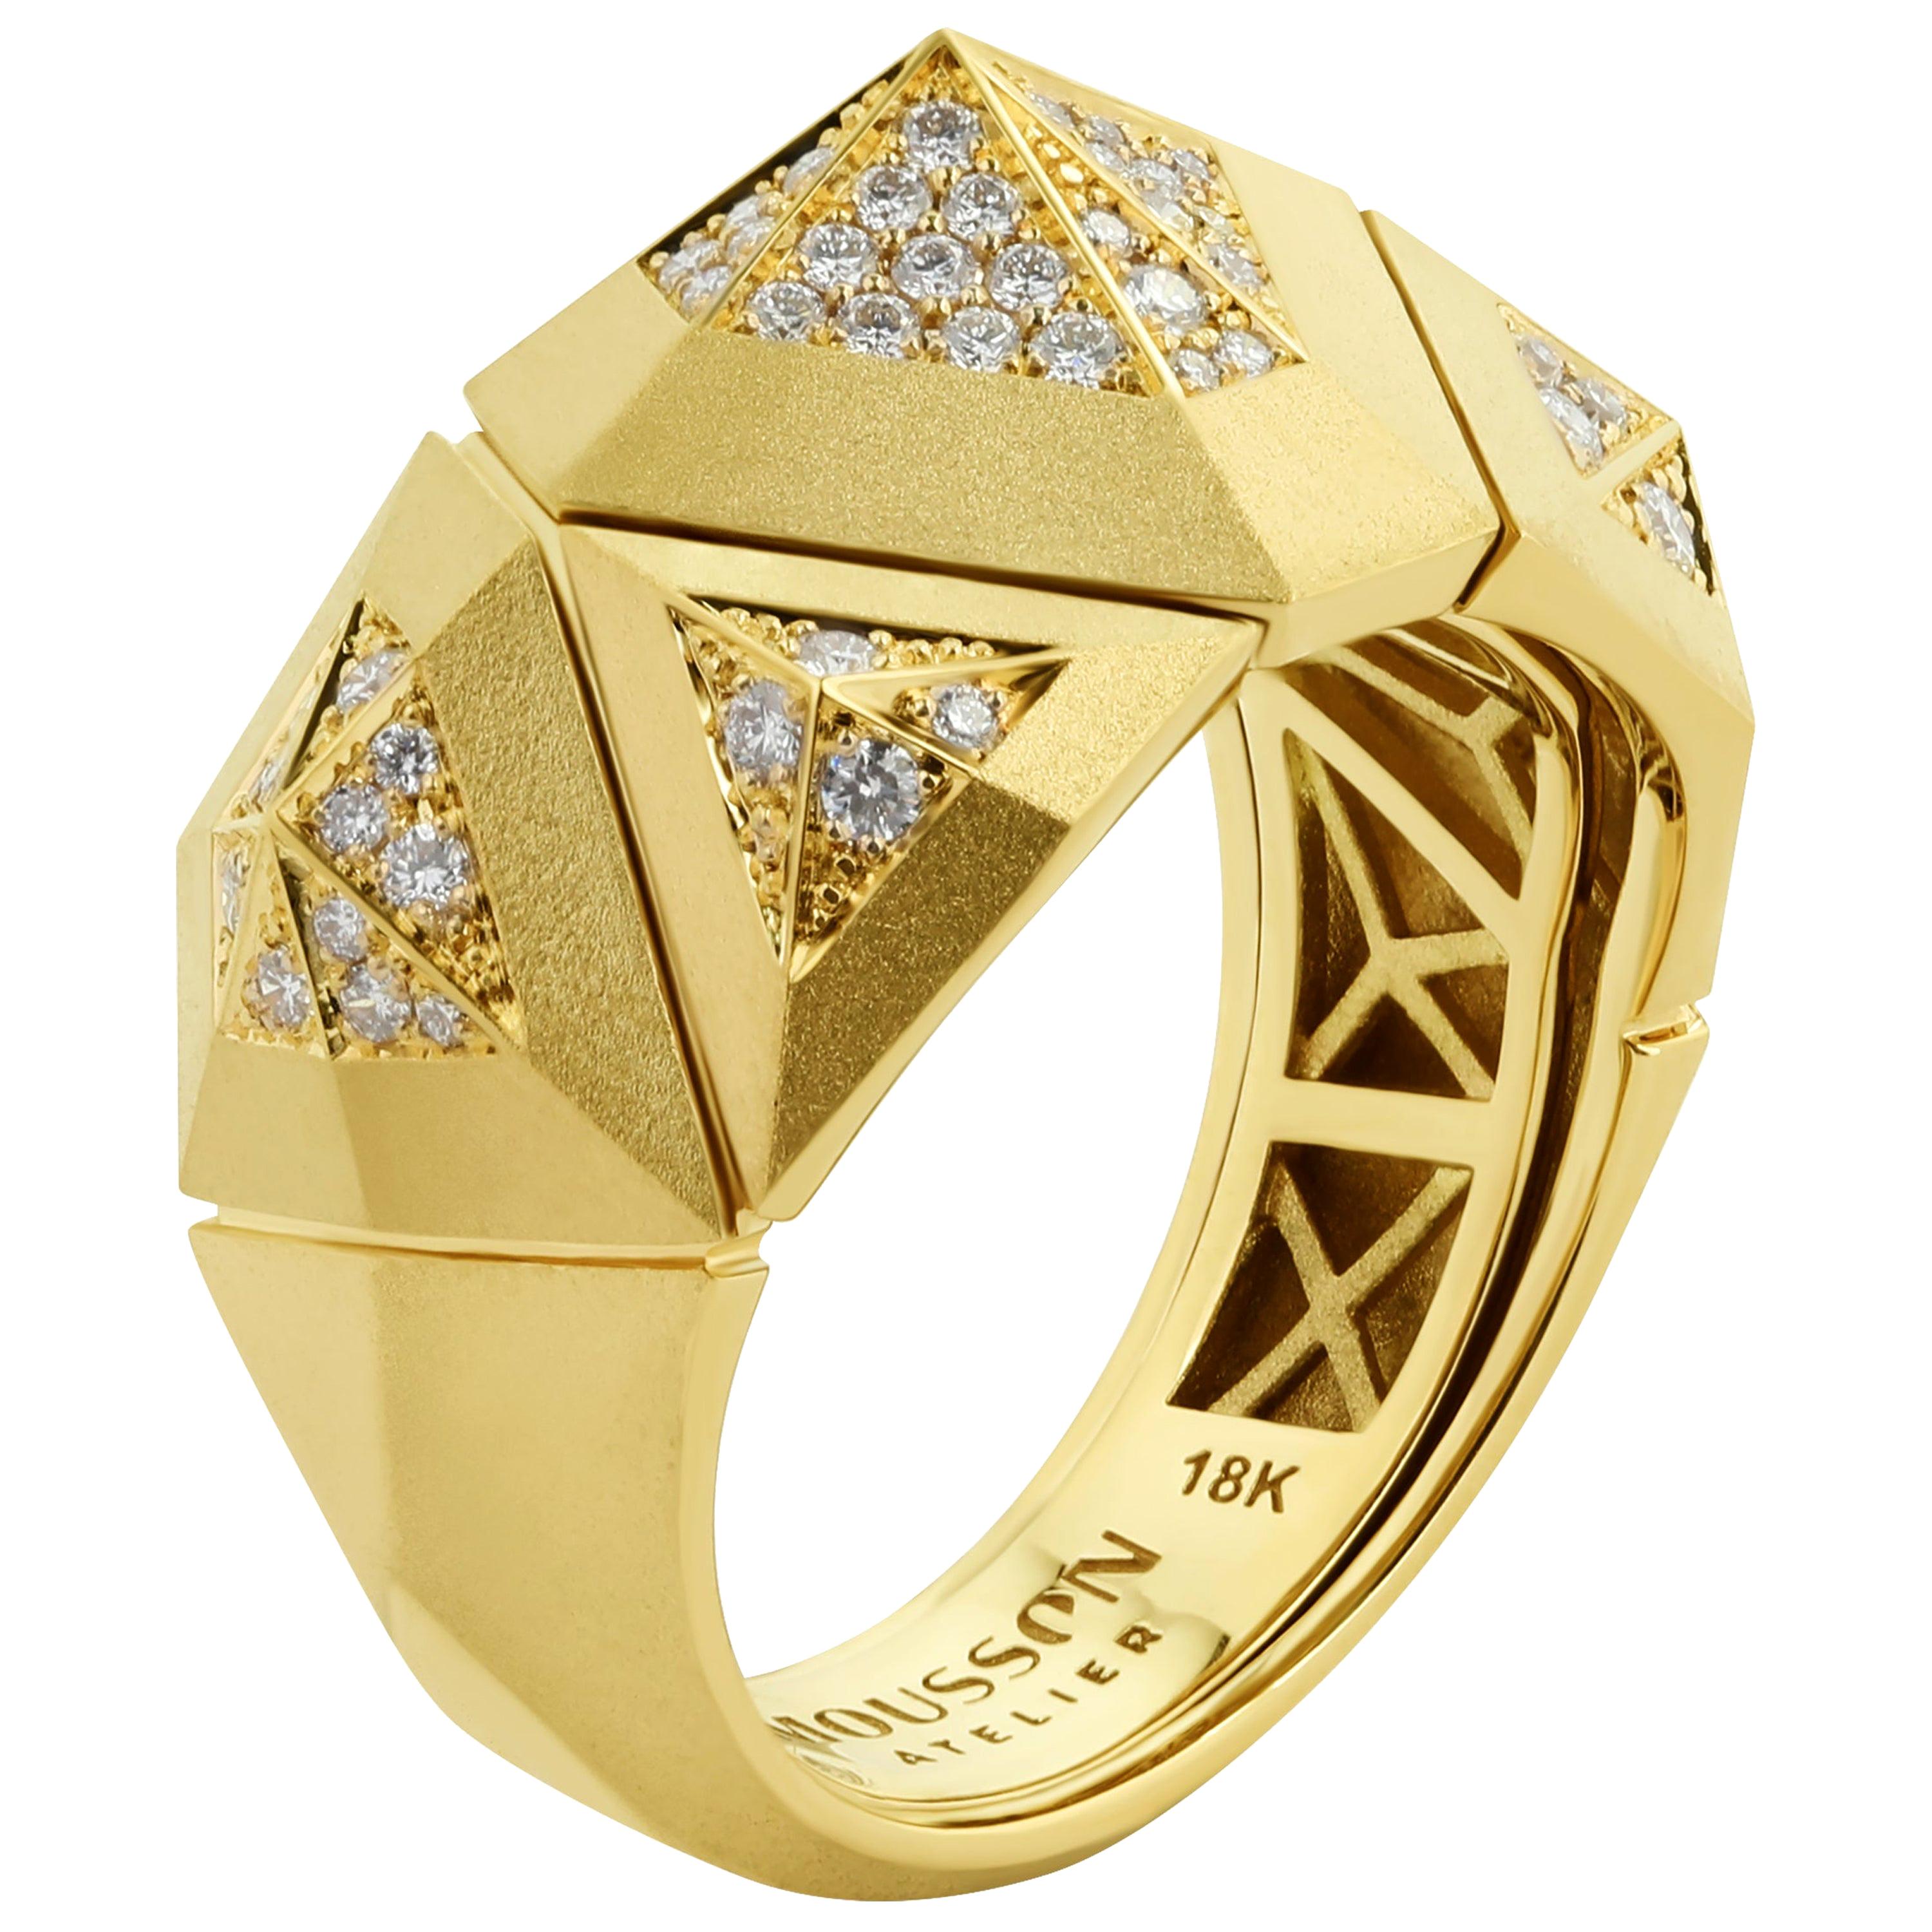 Petite bague géométrique en or jaune mat 18 carats avec diamants